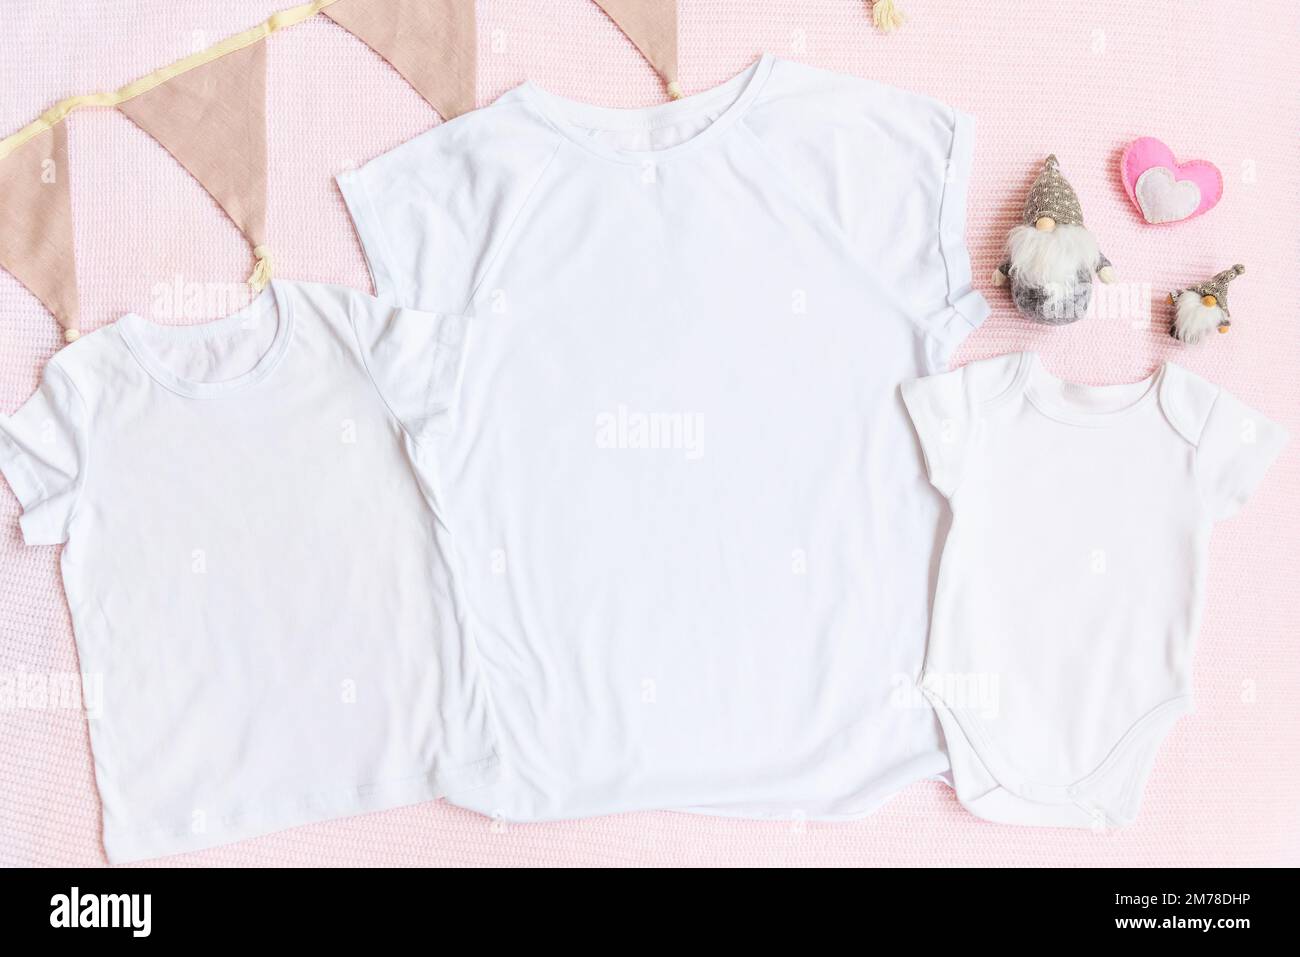 Ostern-T-Shirt und Einteiler mit Zwergen und Herz auf pinkfarbenem Hintergrund für eltern und Kinder Stockfoto